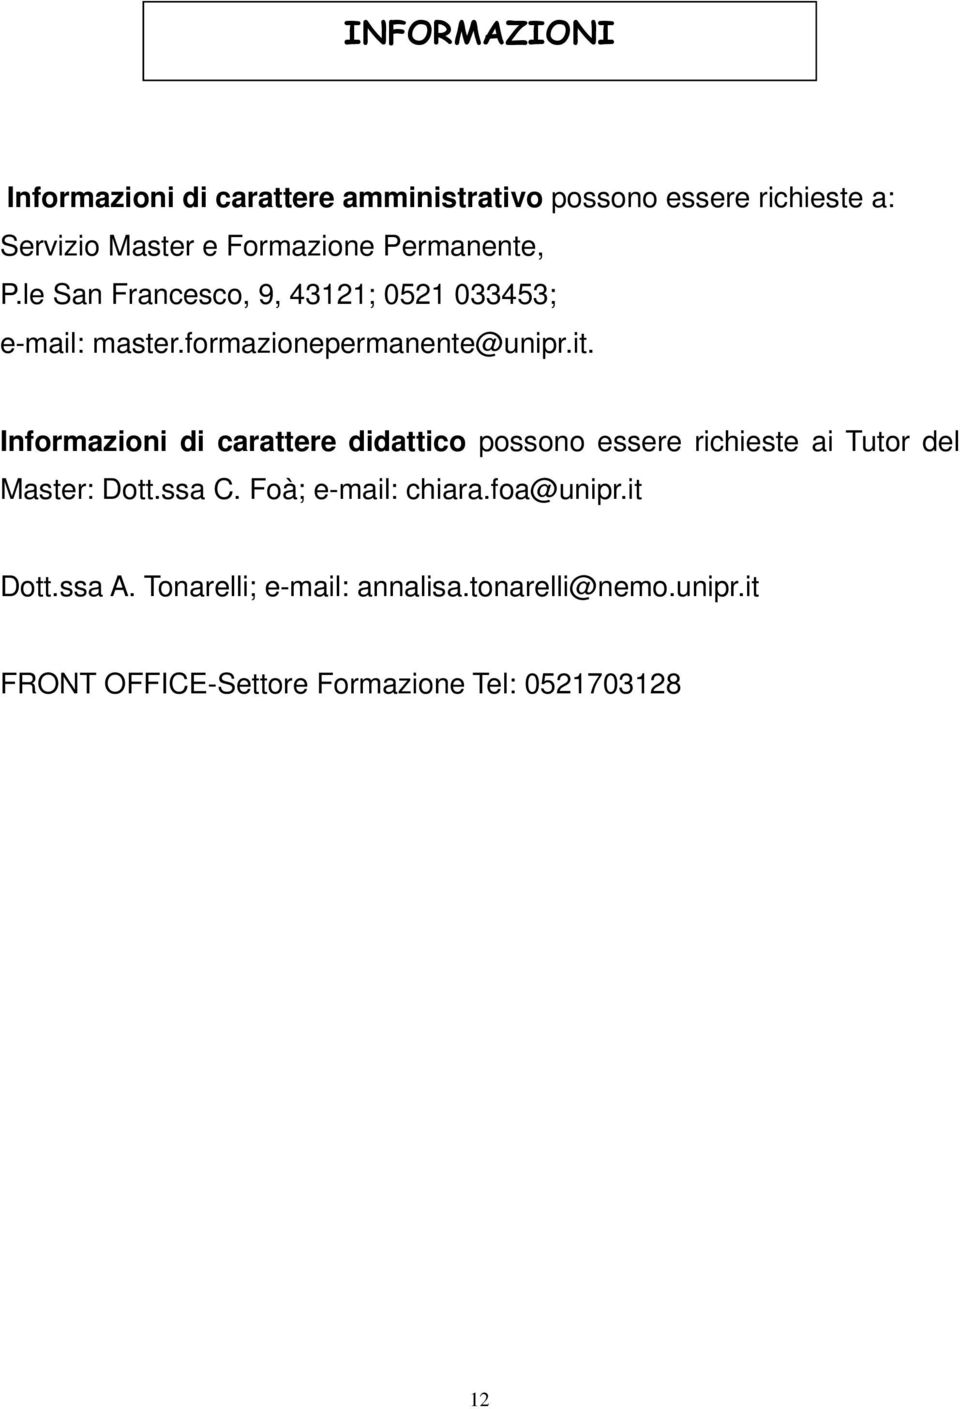 Informazioni di carattere didattico possono essere richieste ai Tutor del Master: Dott.ssa C. Foà; e-mail: chiara.